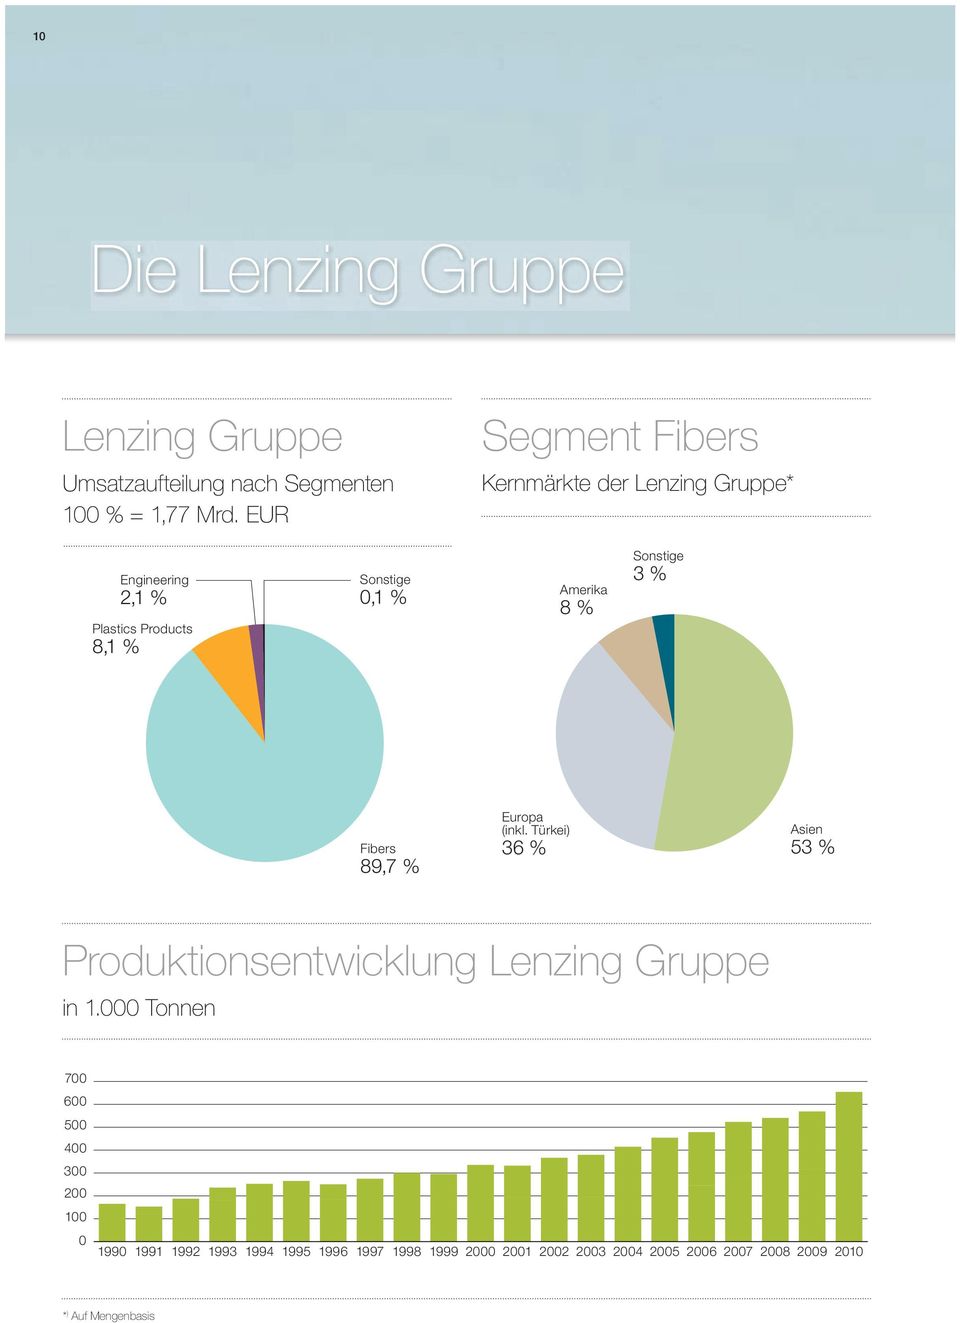 (inkl. Türkei) Fibers 89,7 36 Asien 53 Produktionsentwicklung Lenzing Gruppe in 1.